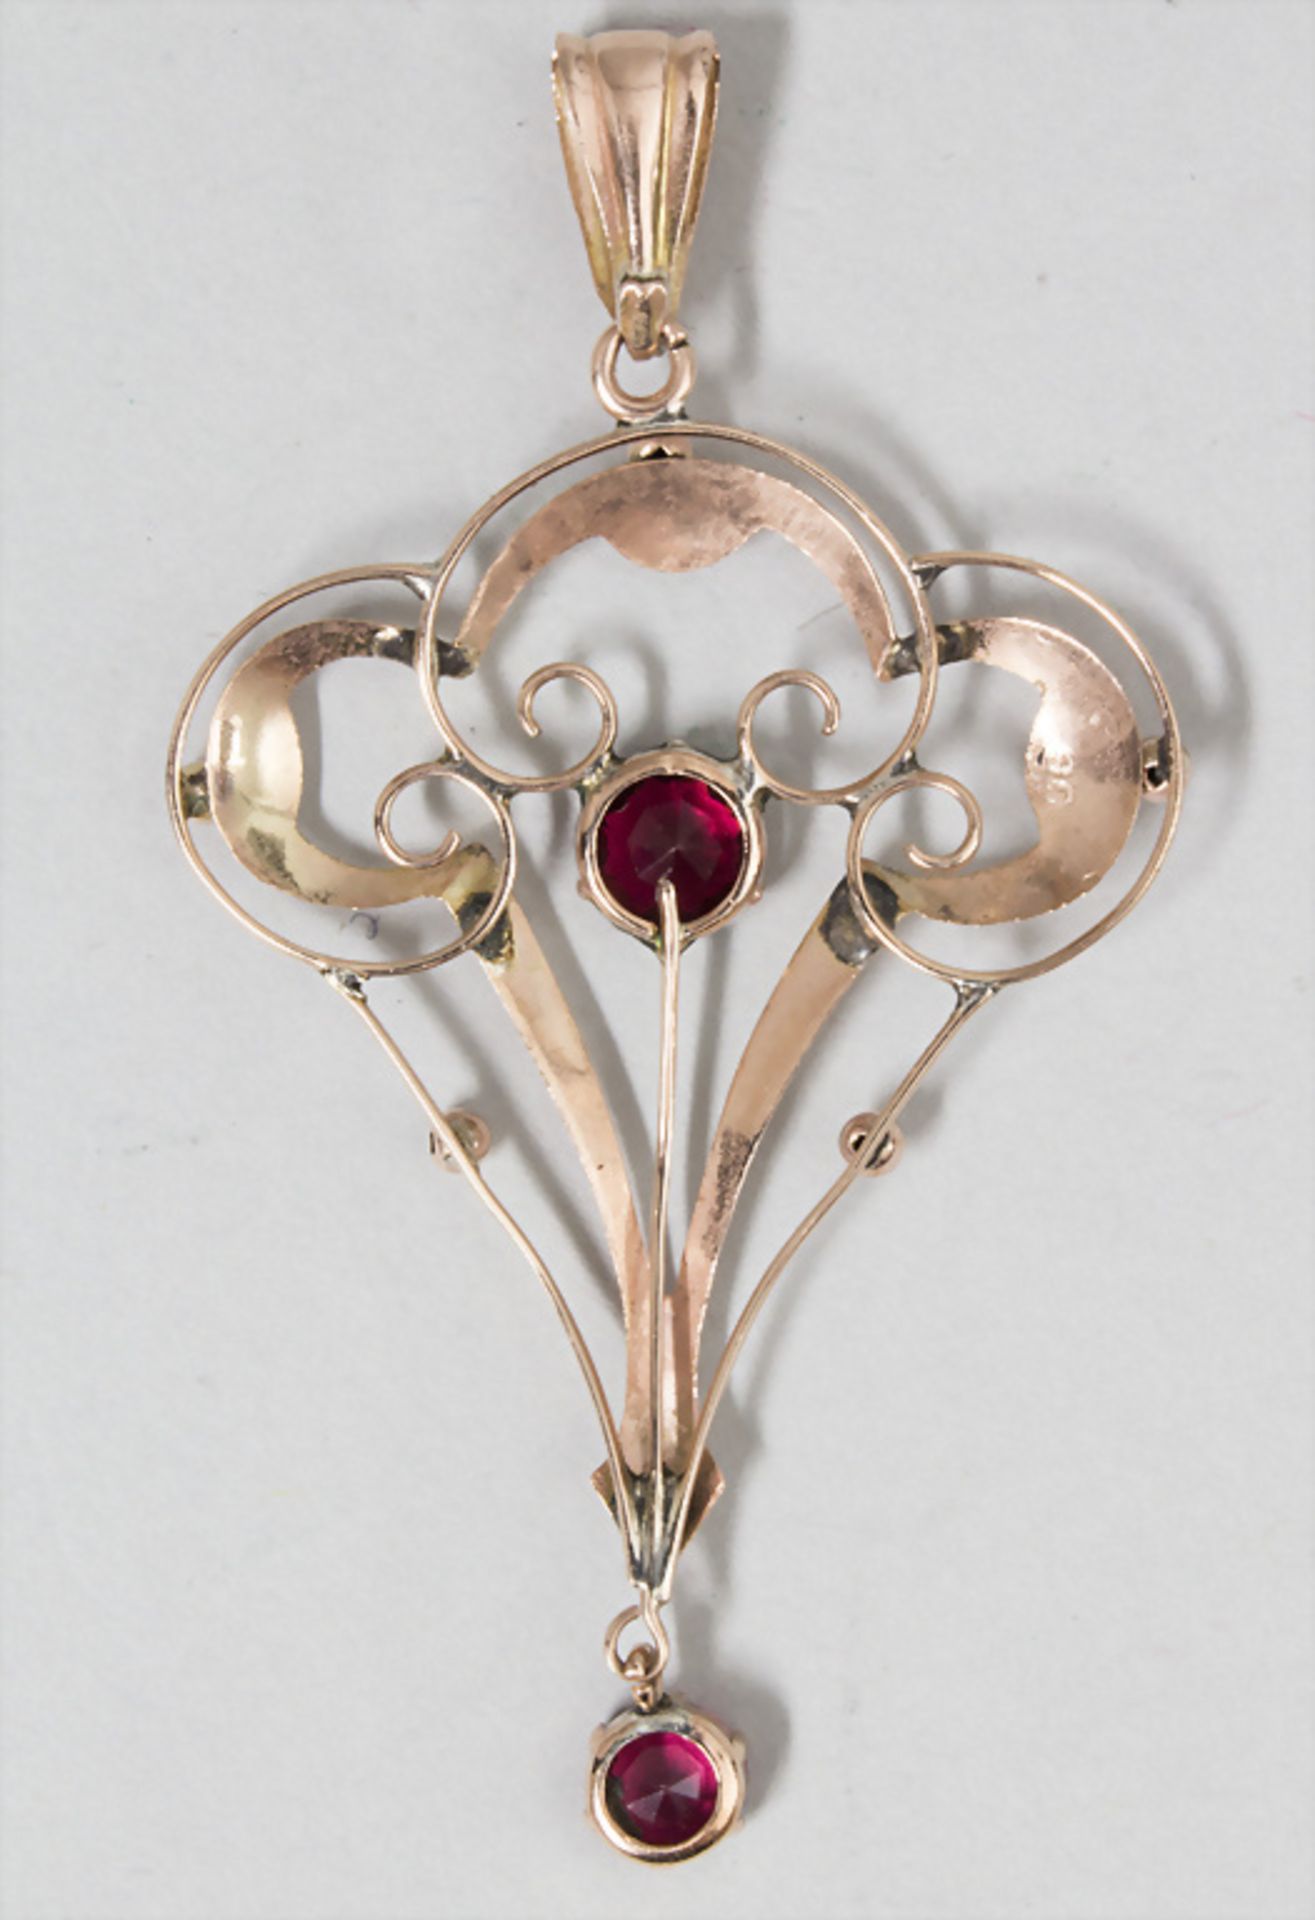 Jugendstil Anhänger / An Art Nouveau pendant, England, um 1900 - Image 2 of 2